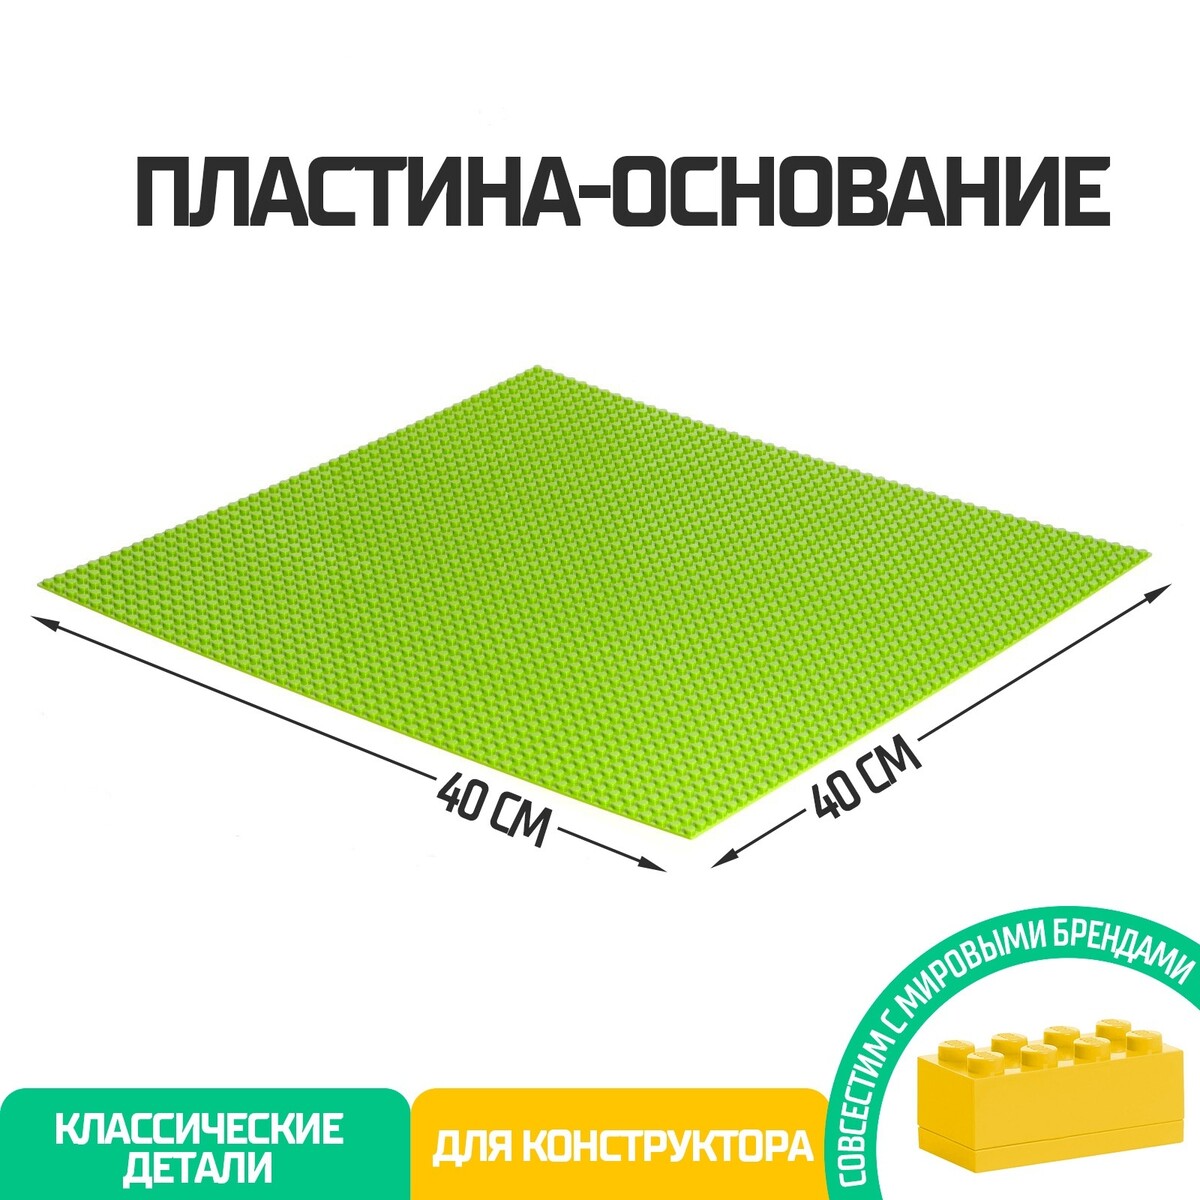 Пластина-основание для конструктора, 40 × 40 см, цвет салатовый пластина перекрытие для конструктора 16 х 24 см зеленый